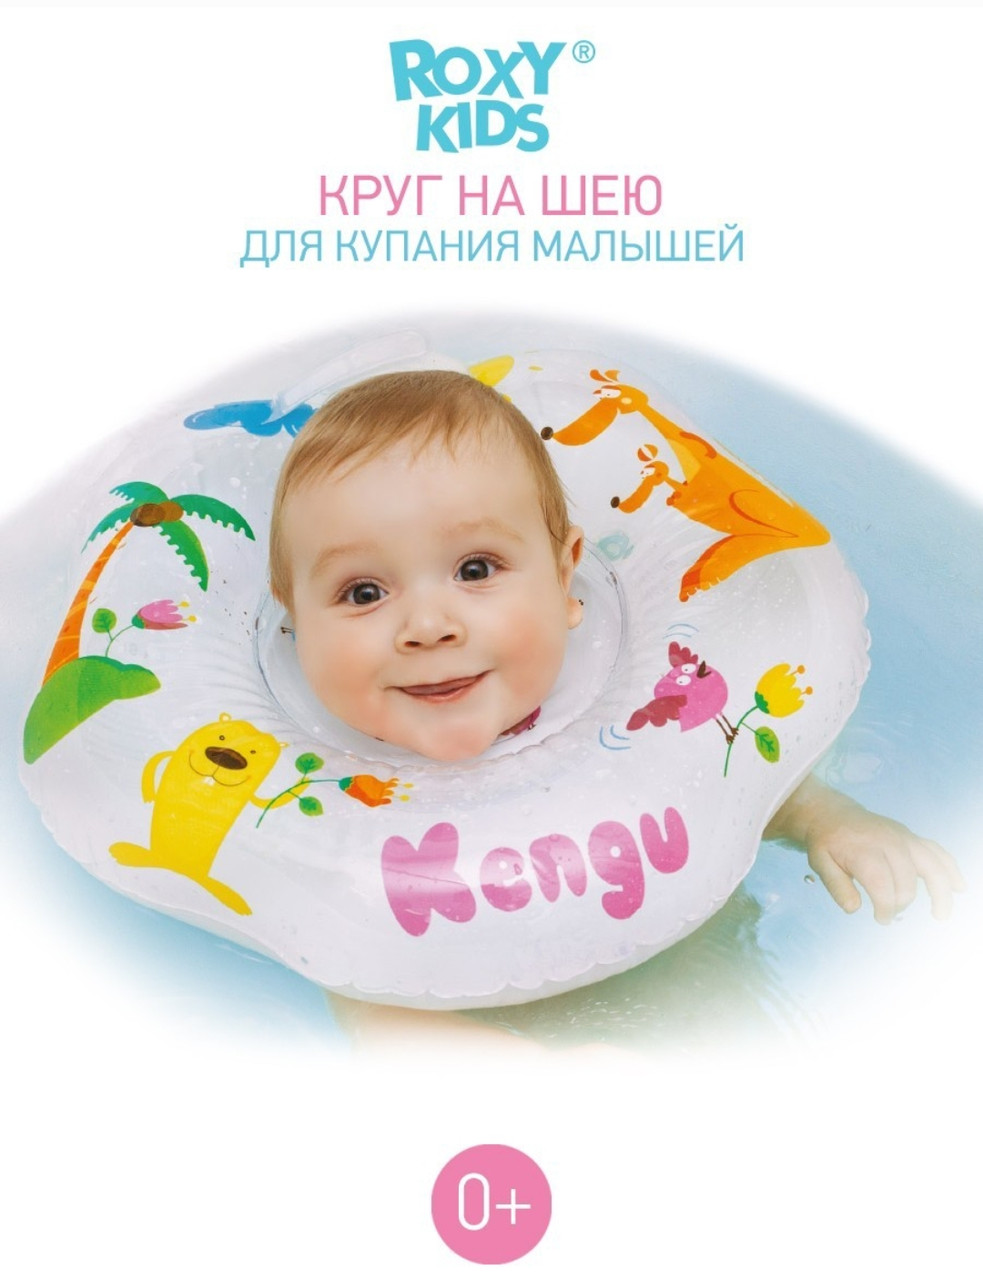 Круг для купания новорождённых и малышей на шею Kengu от Roxy-Kinds